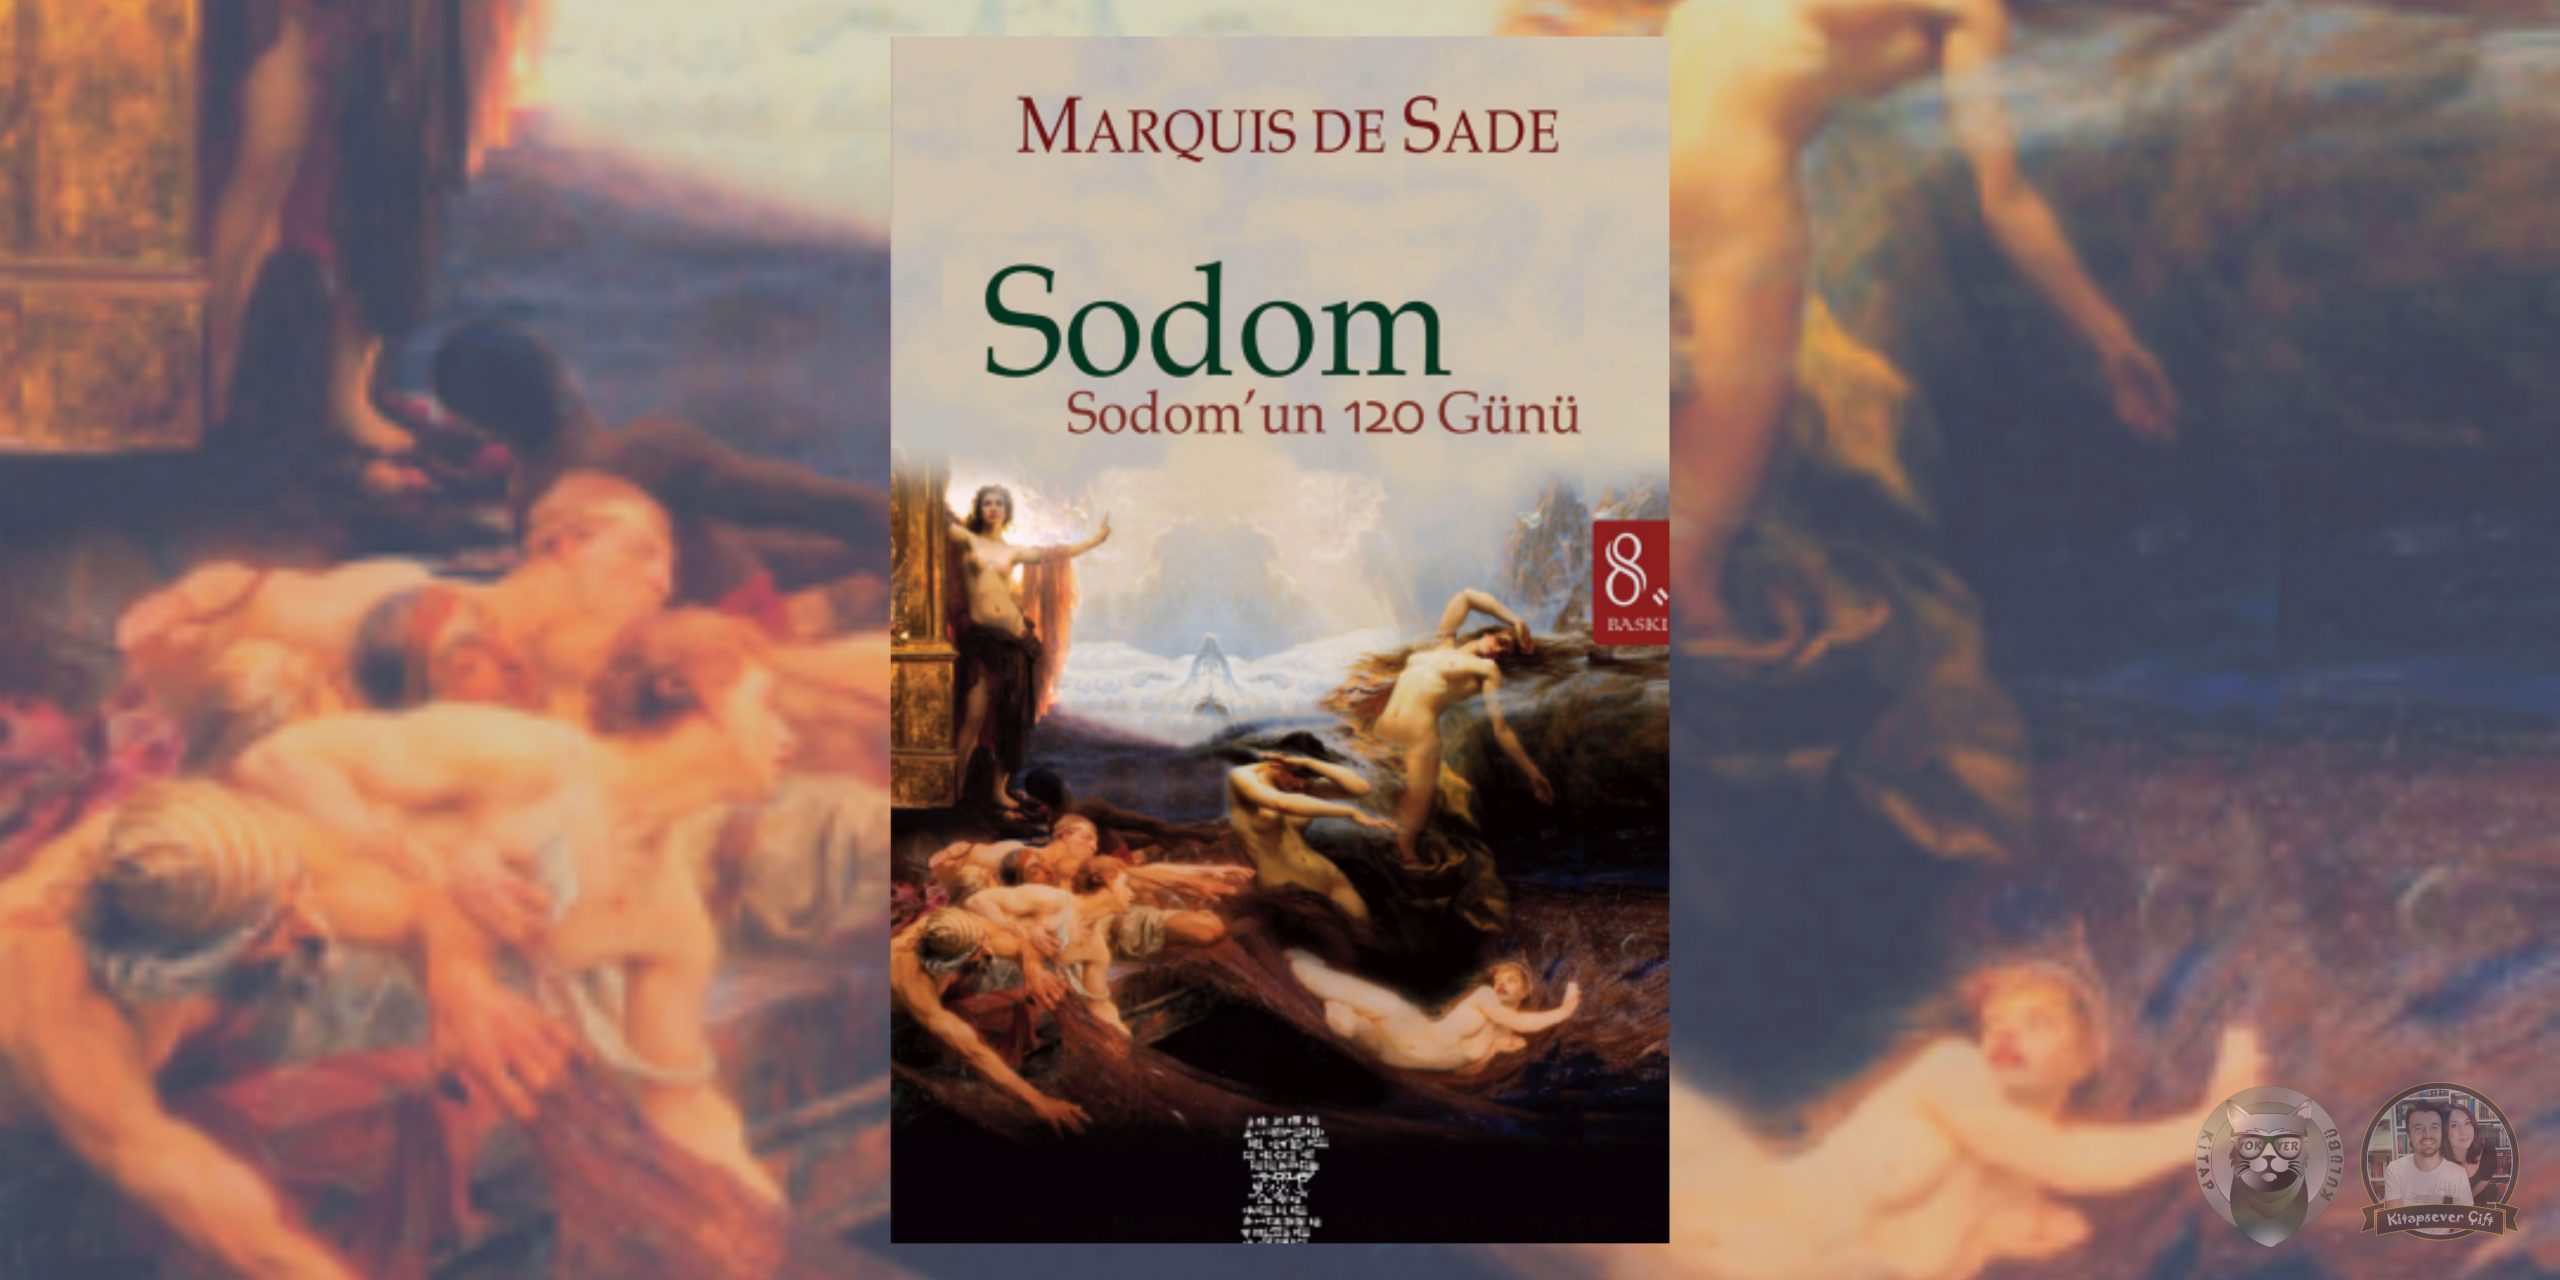 körlük hayranlarına 13 kitap önerisi 11 – sodom – sodomun 120 gunu scaled